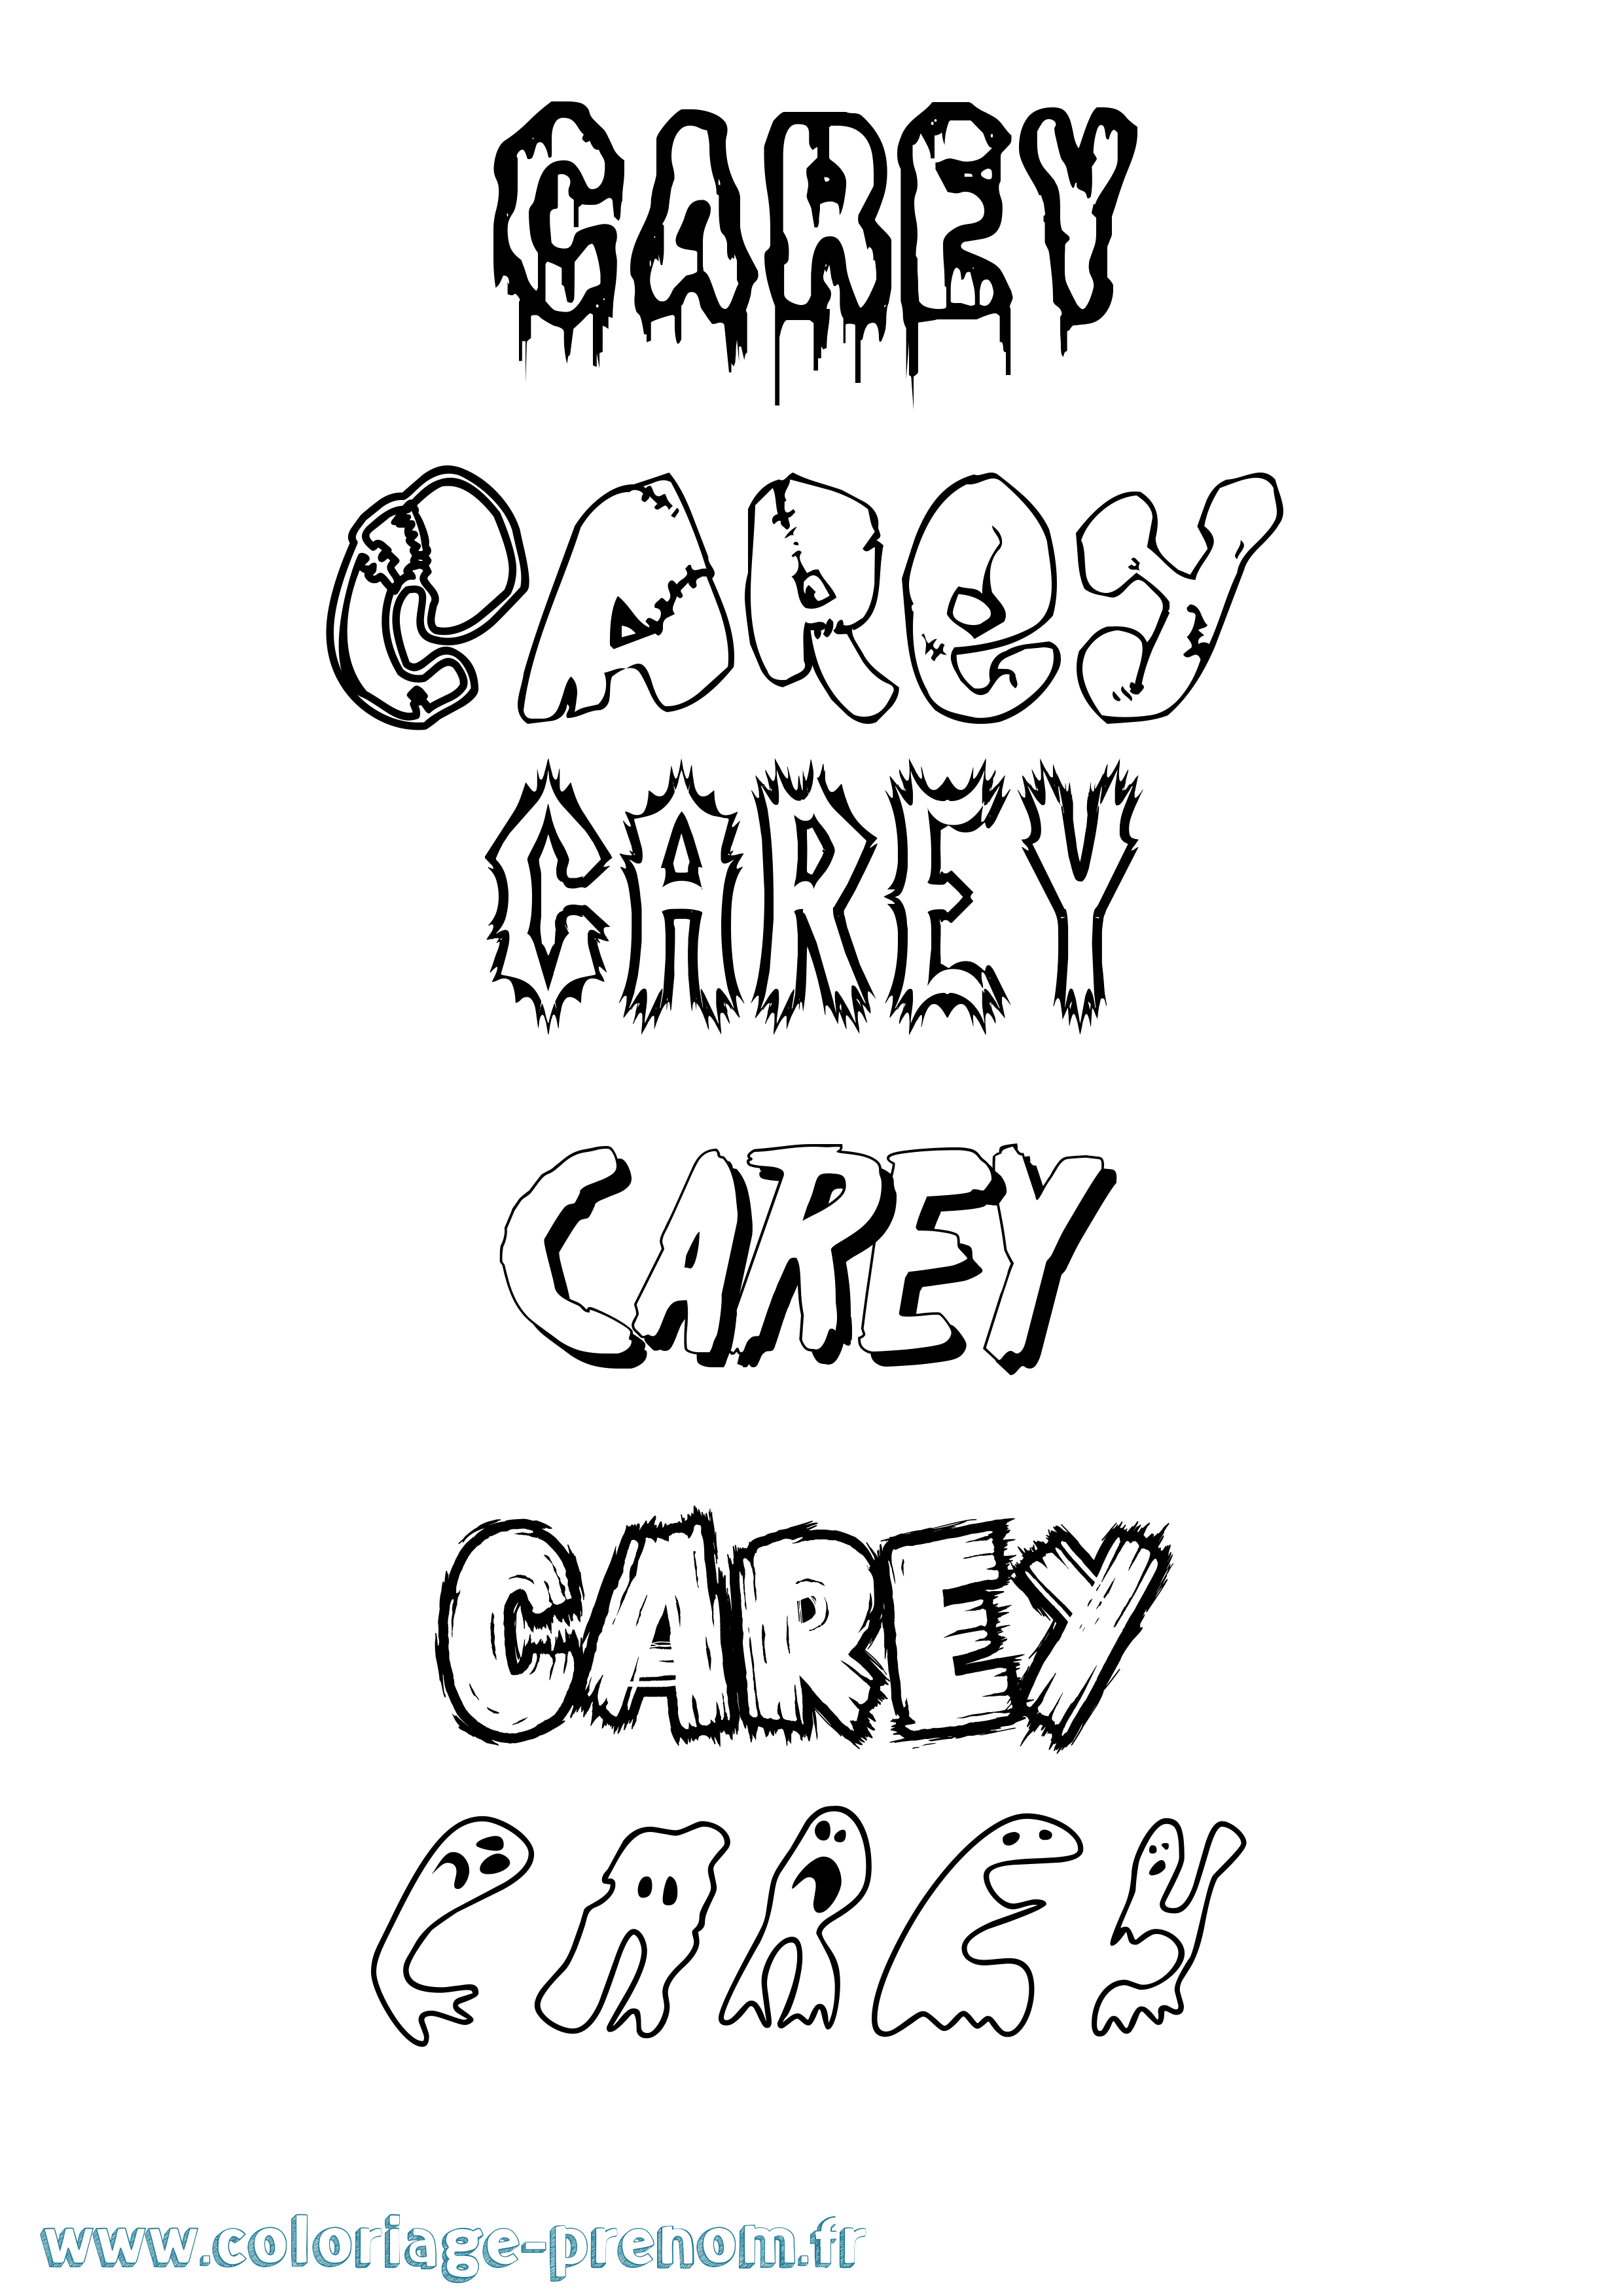 Coloriage prénom Carey Frisson